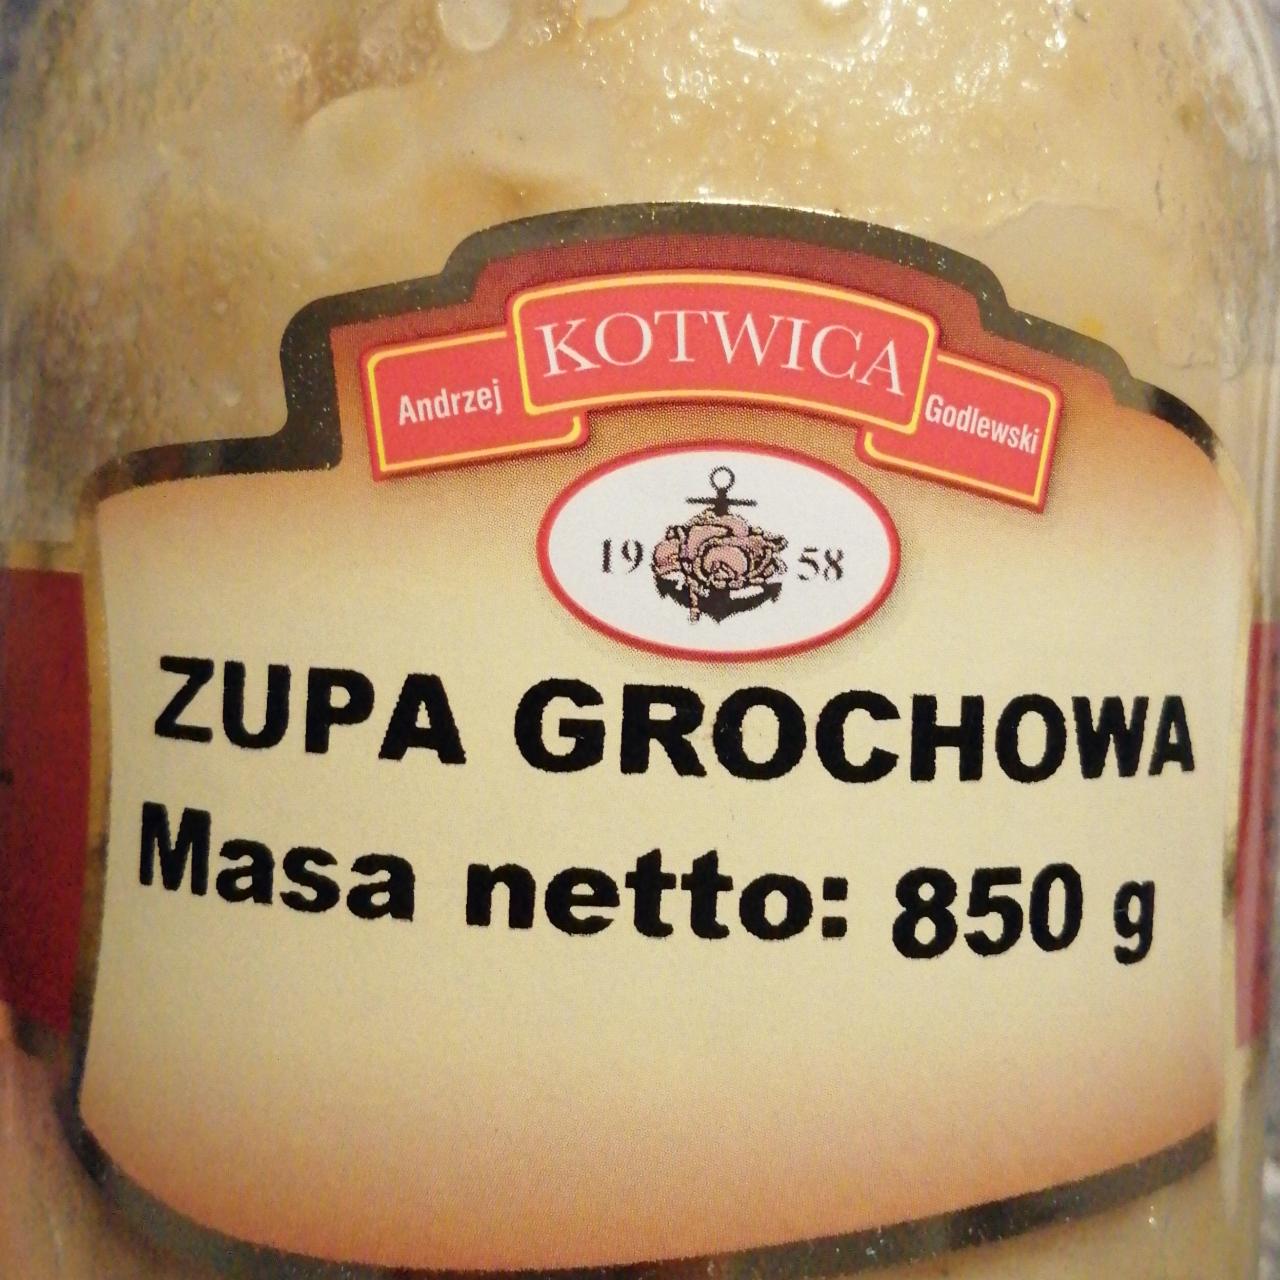 Zdjęcia - Zupa grochowa kotwica